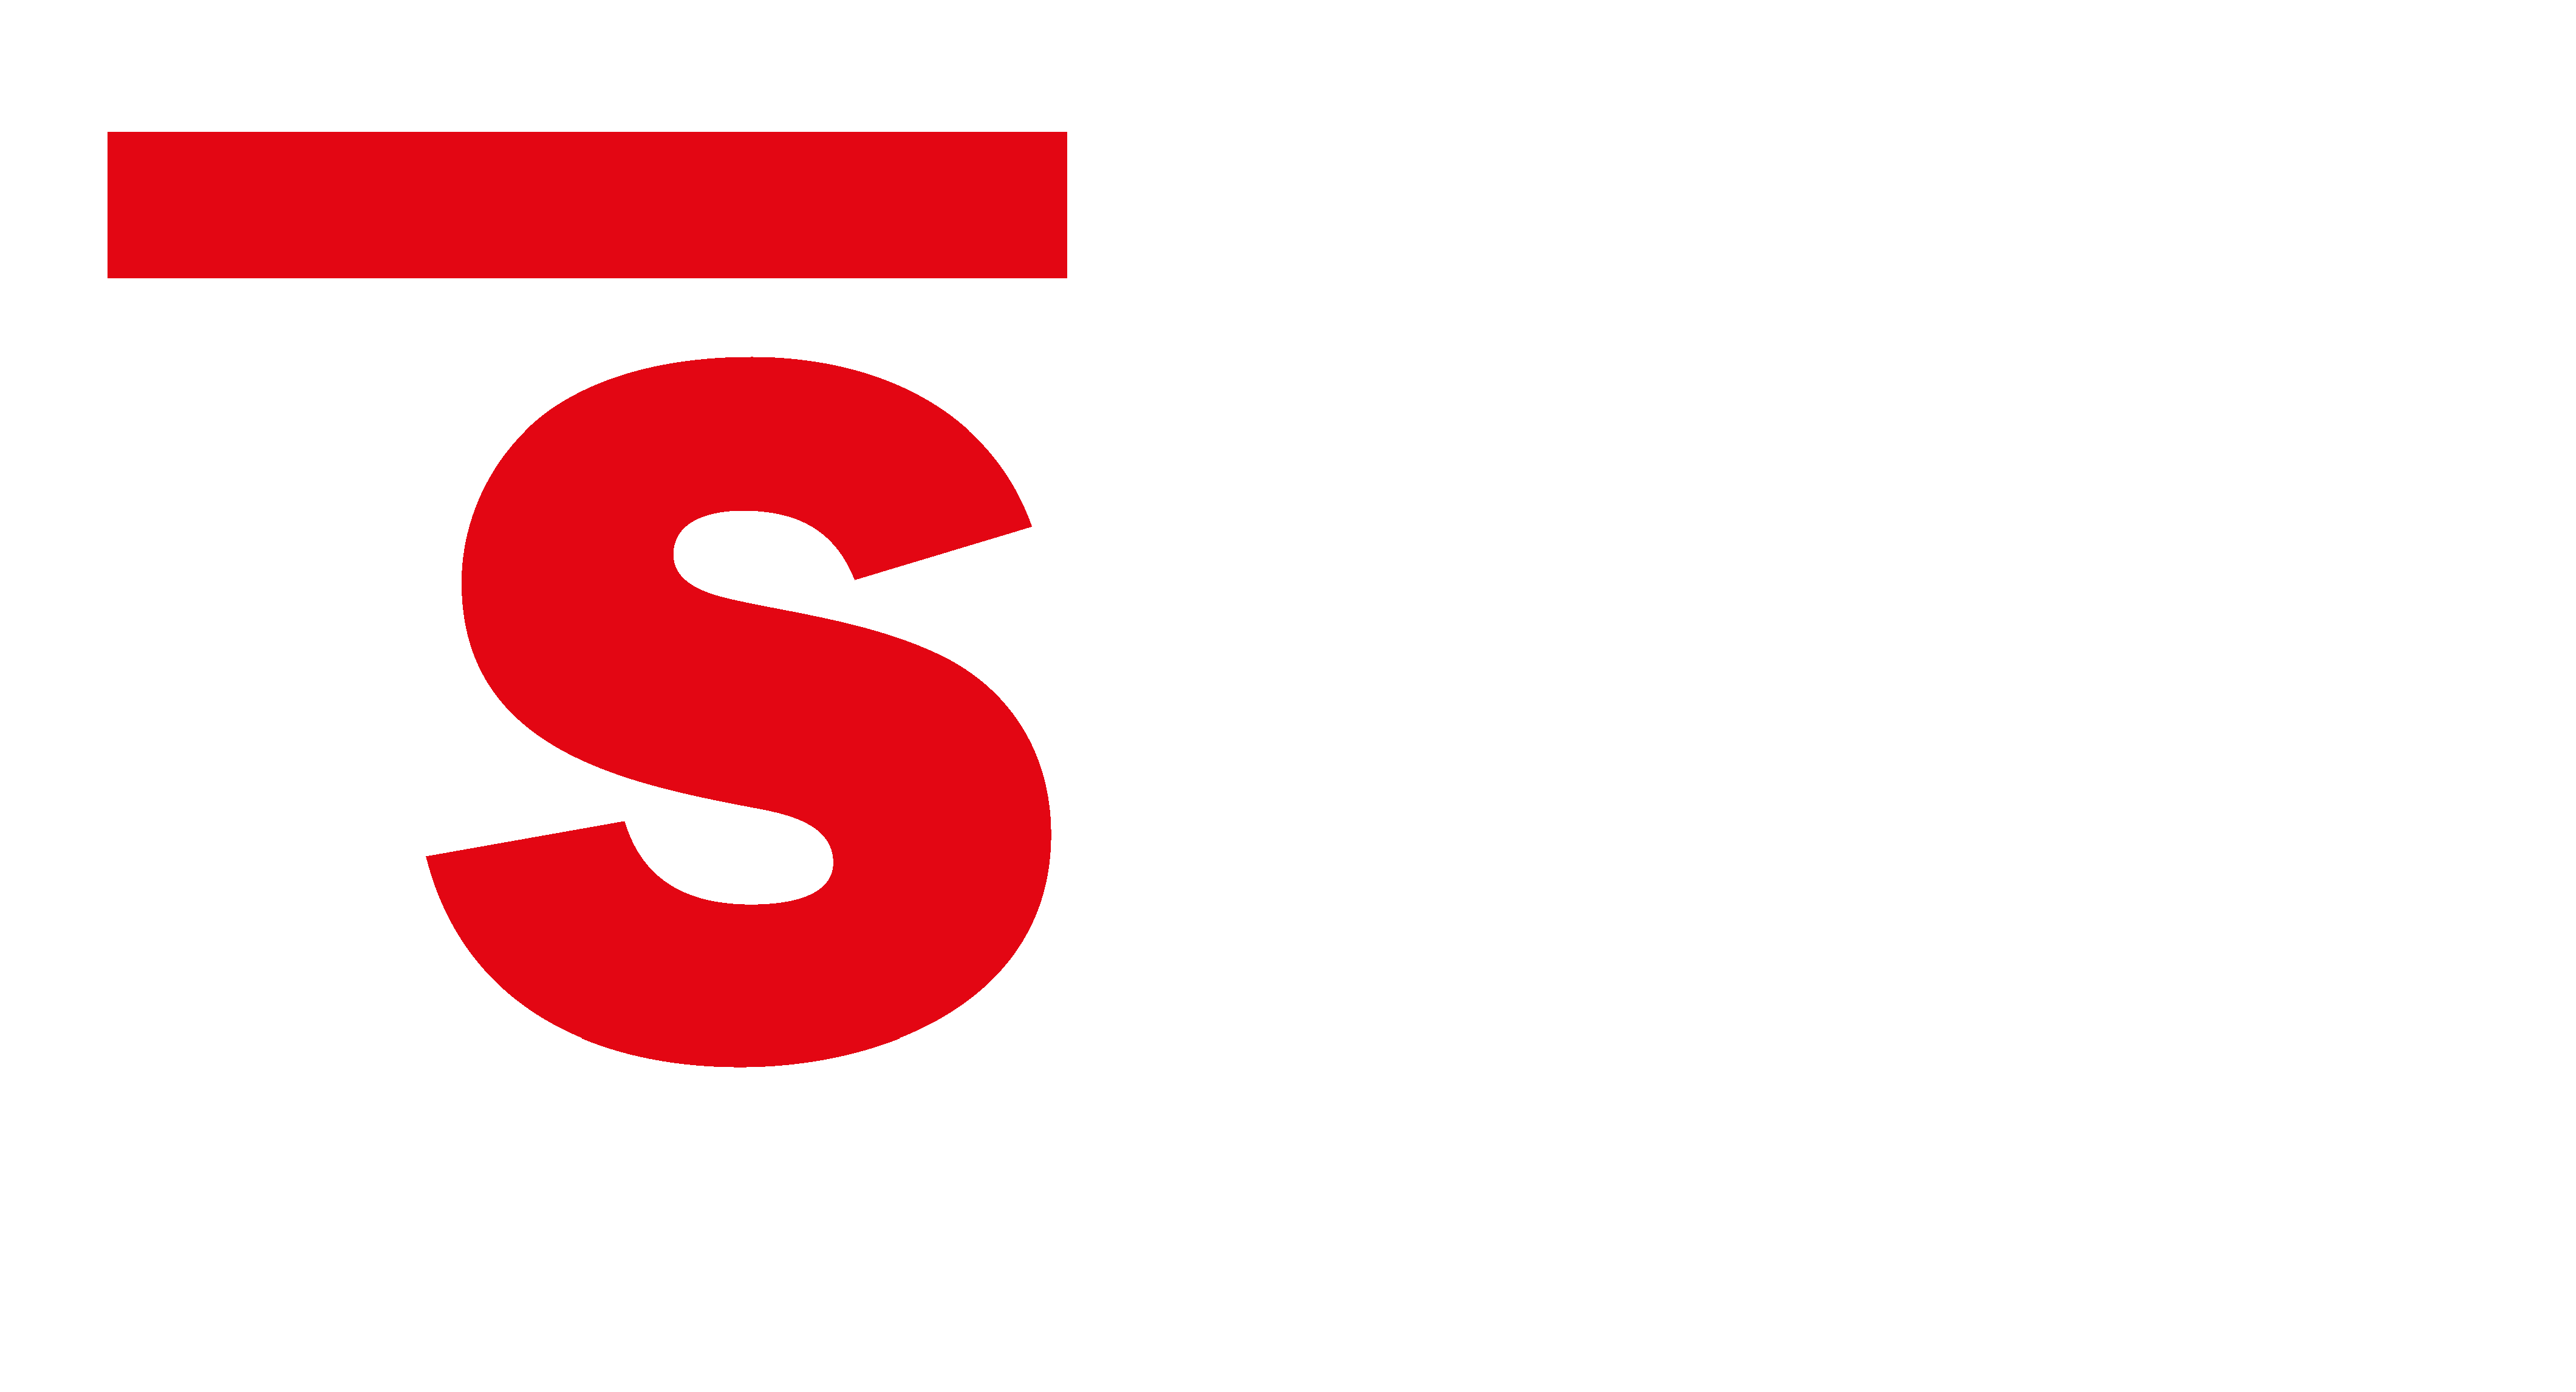 ISEO Logo